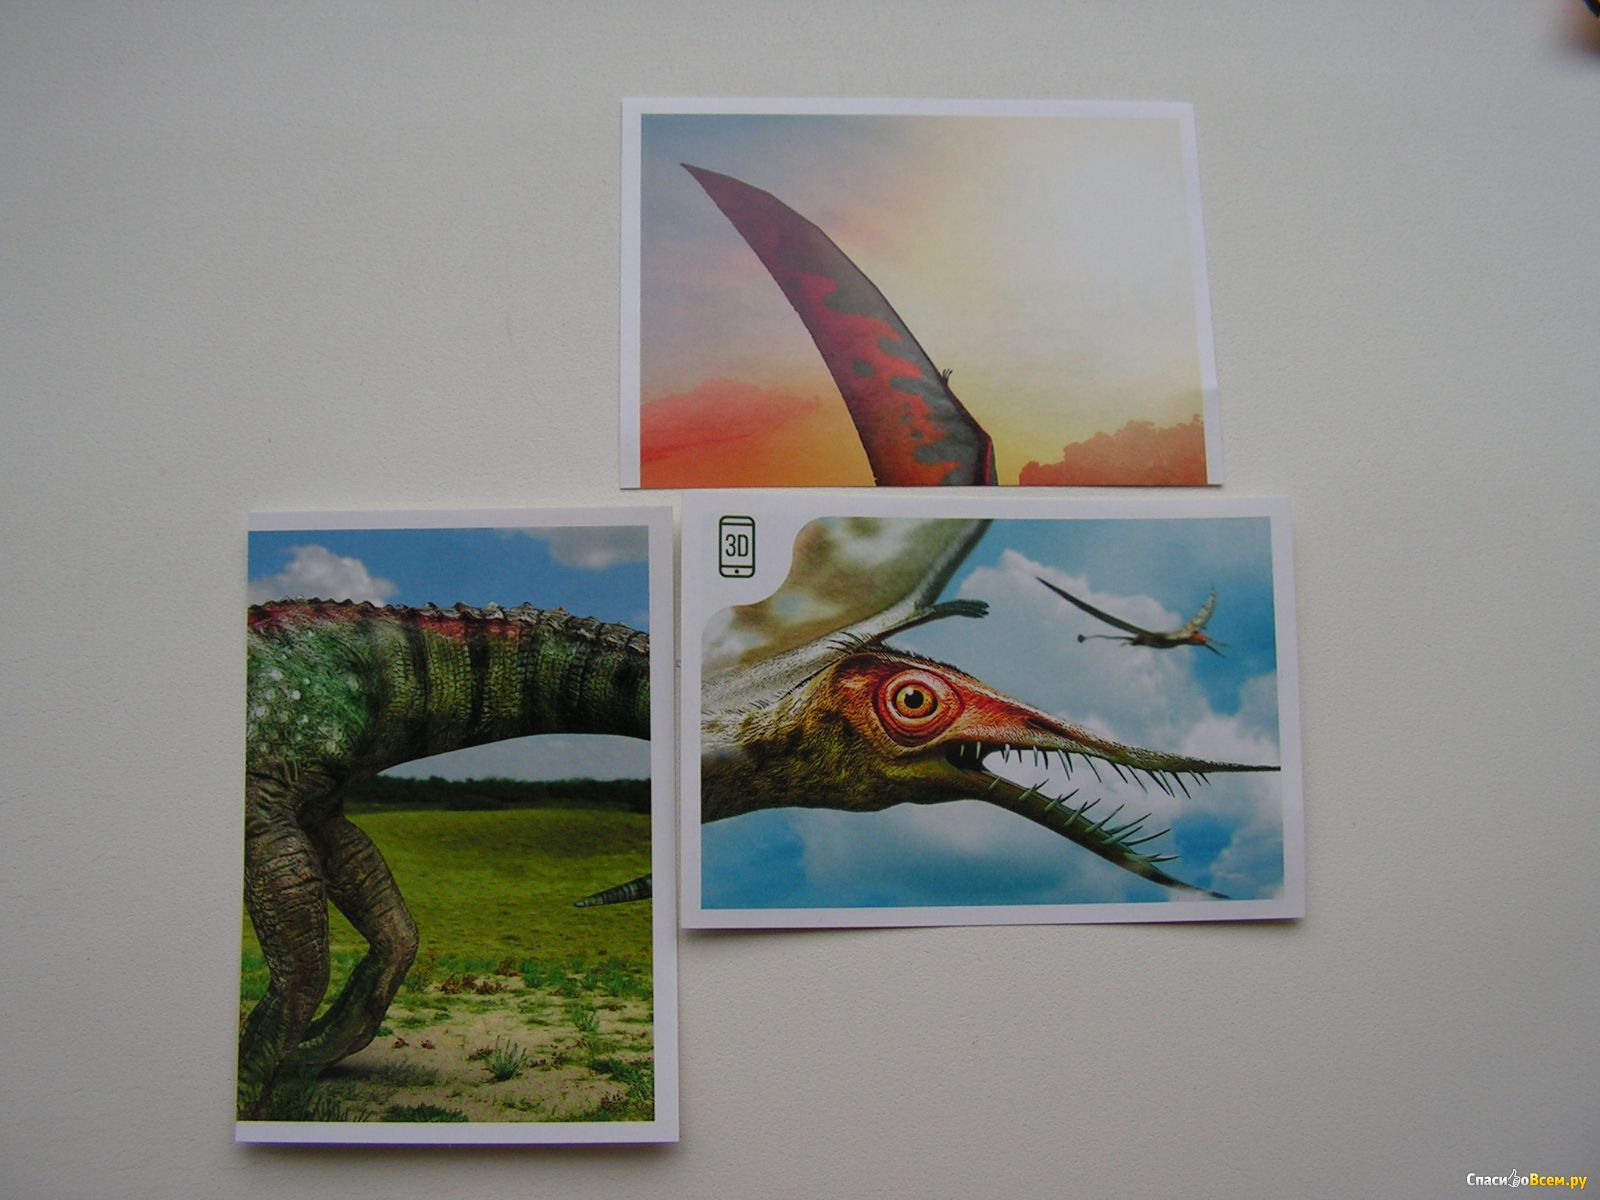 Дикси динозавры. Карточки Дино Дикси. Наклейки динозавры Дикси. Карточки динозавры из Дикси. Дино Дикси наклейки.